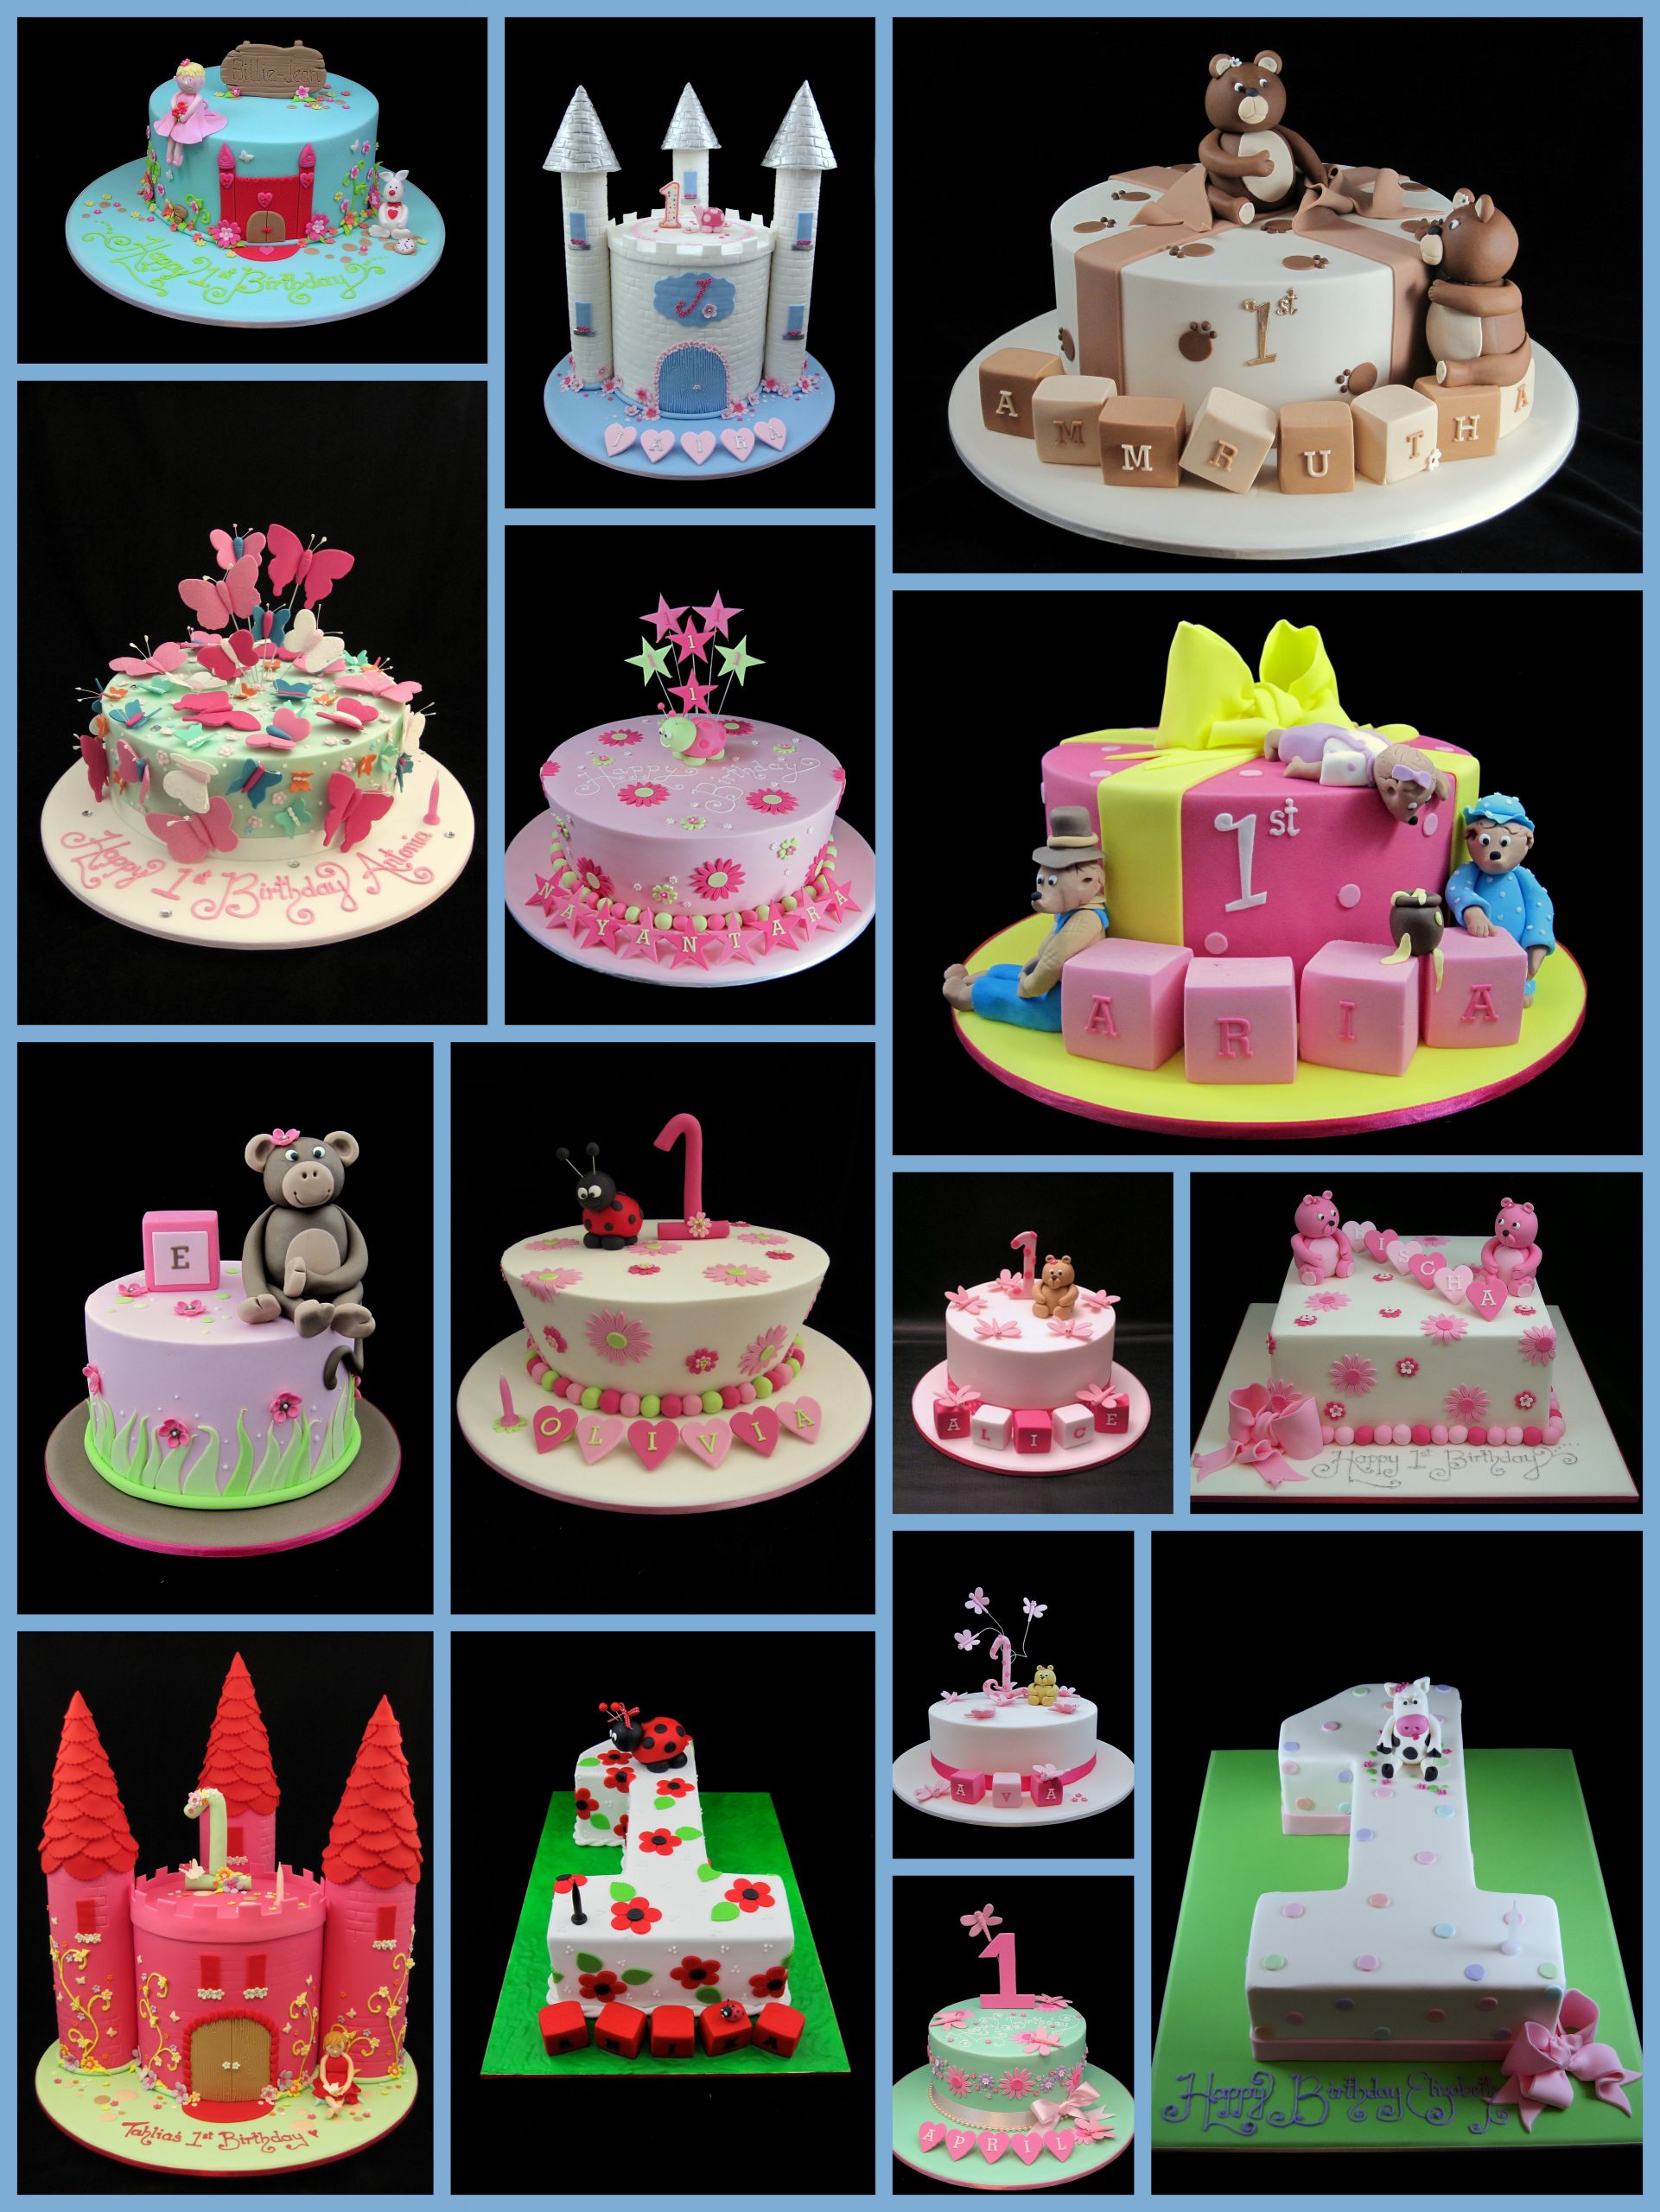 1st Birthday Cake Ideas For Girl
 1st birthday cakes for girls